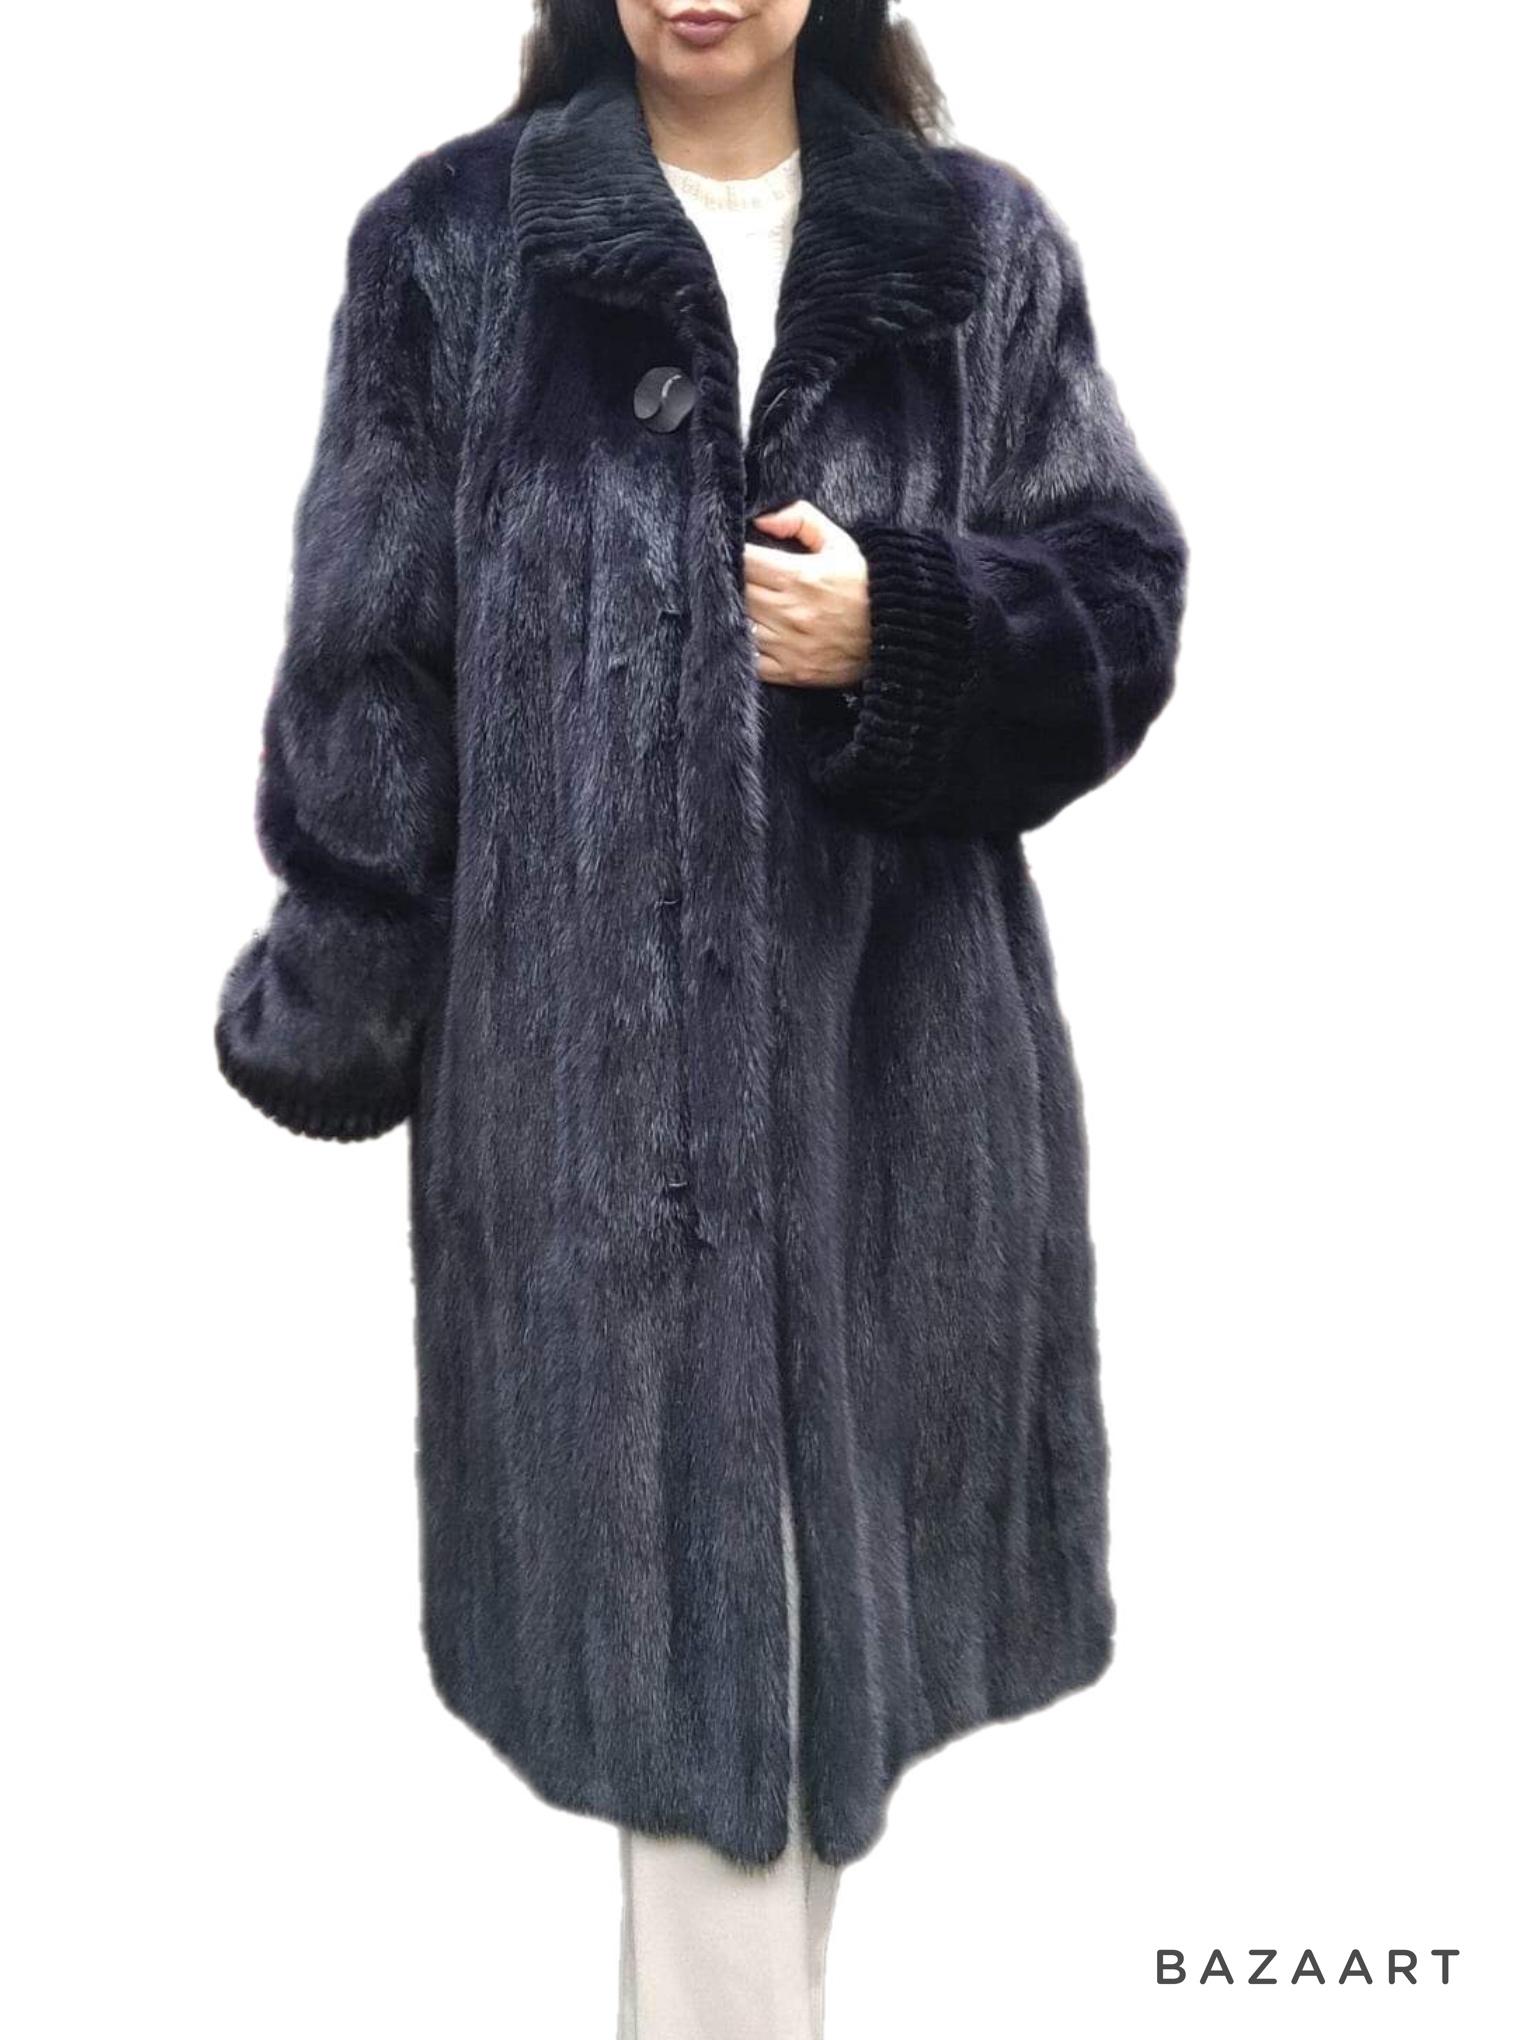 ~ Manteau de fourrure de vison violet non utilisé (Taille 12 - l) 

En matière de fourrure, Canada Majestic est la référence ultime en termes de qualité et de style. Ce superbe manteau blush est un classique avec son design poussette et ses coutures